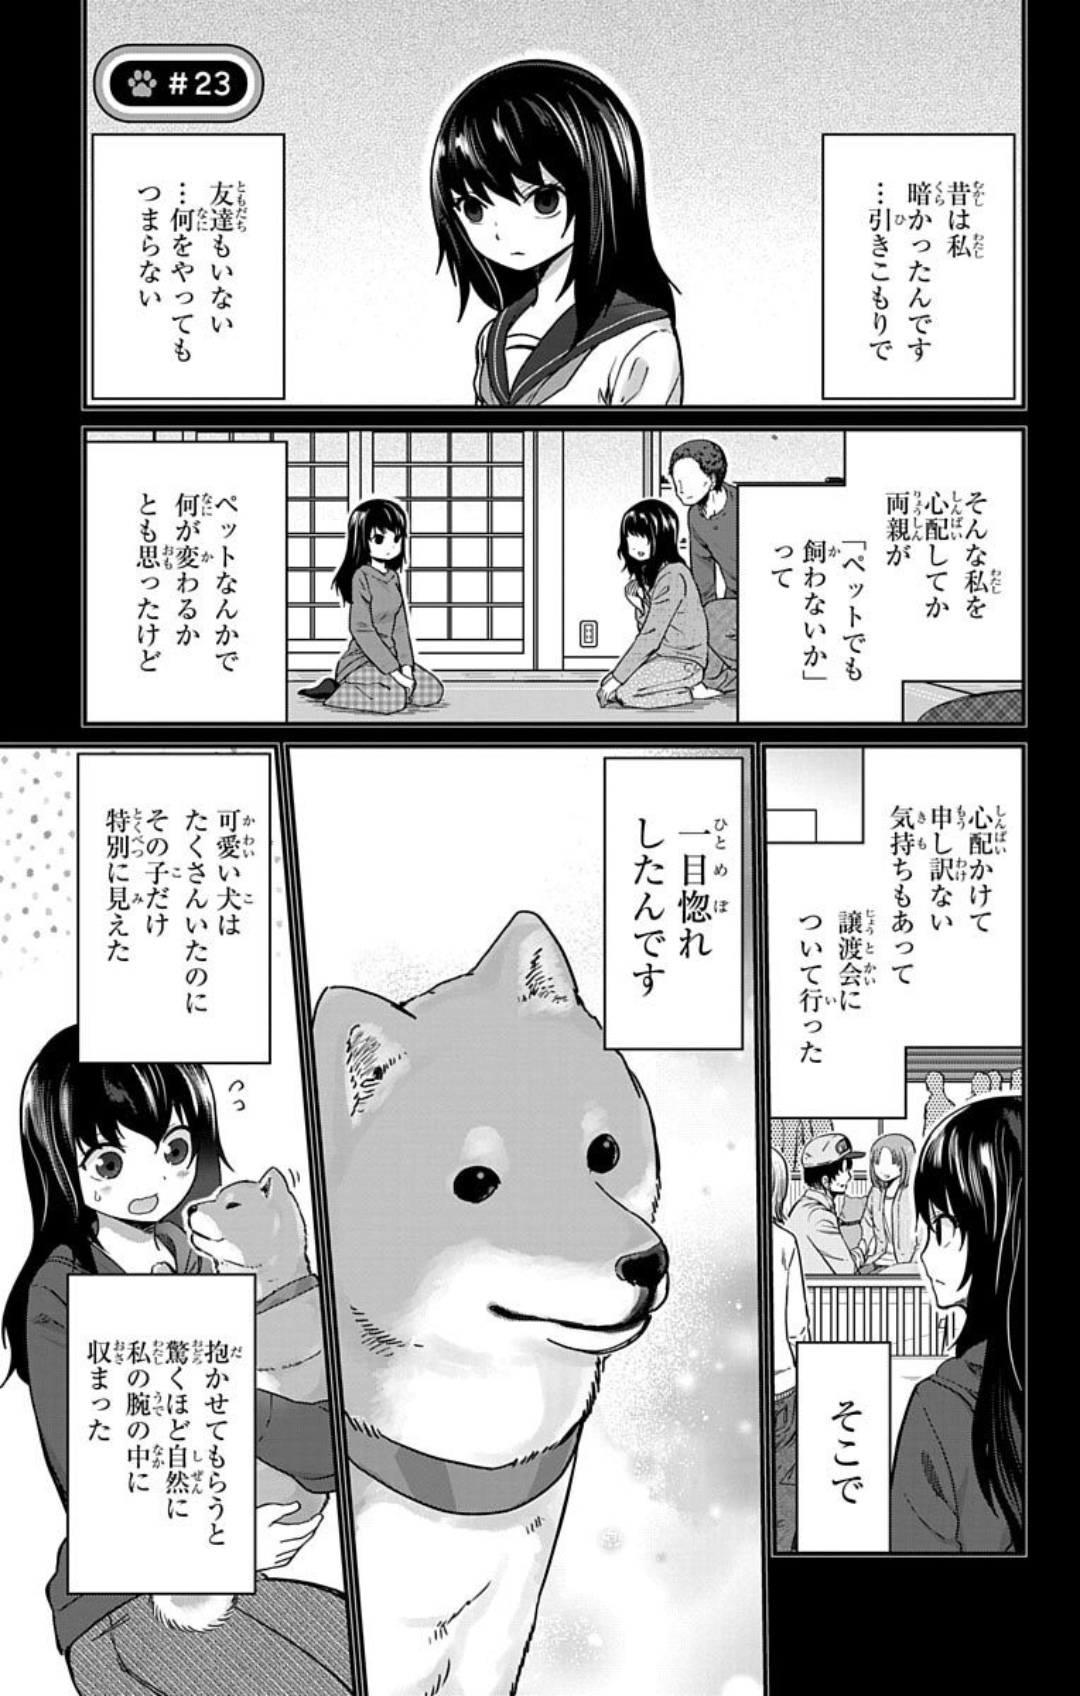 Kawaisugi Crisis - Chapter 23 - Page 1